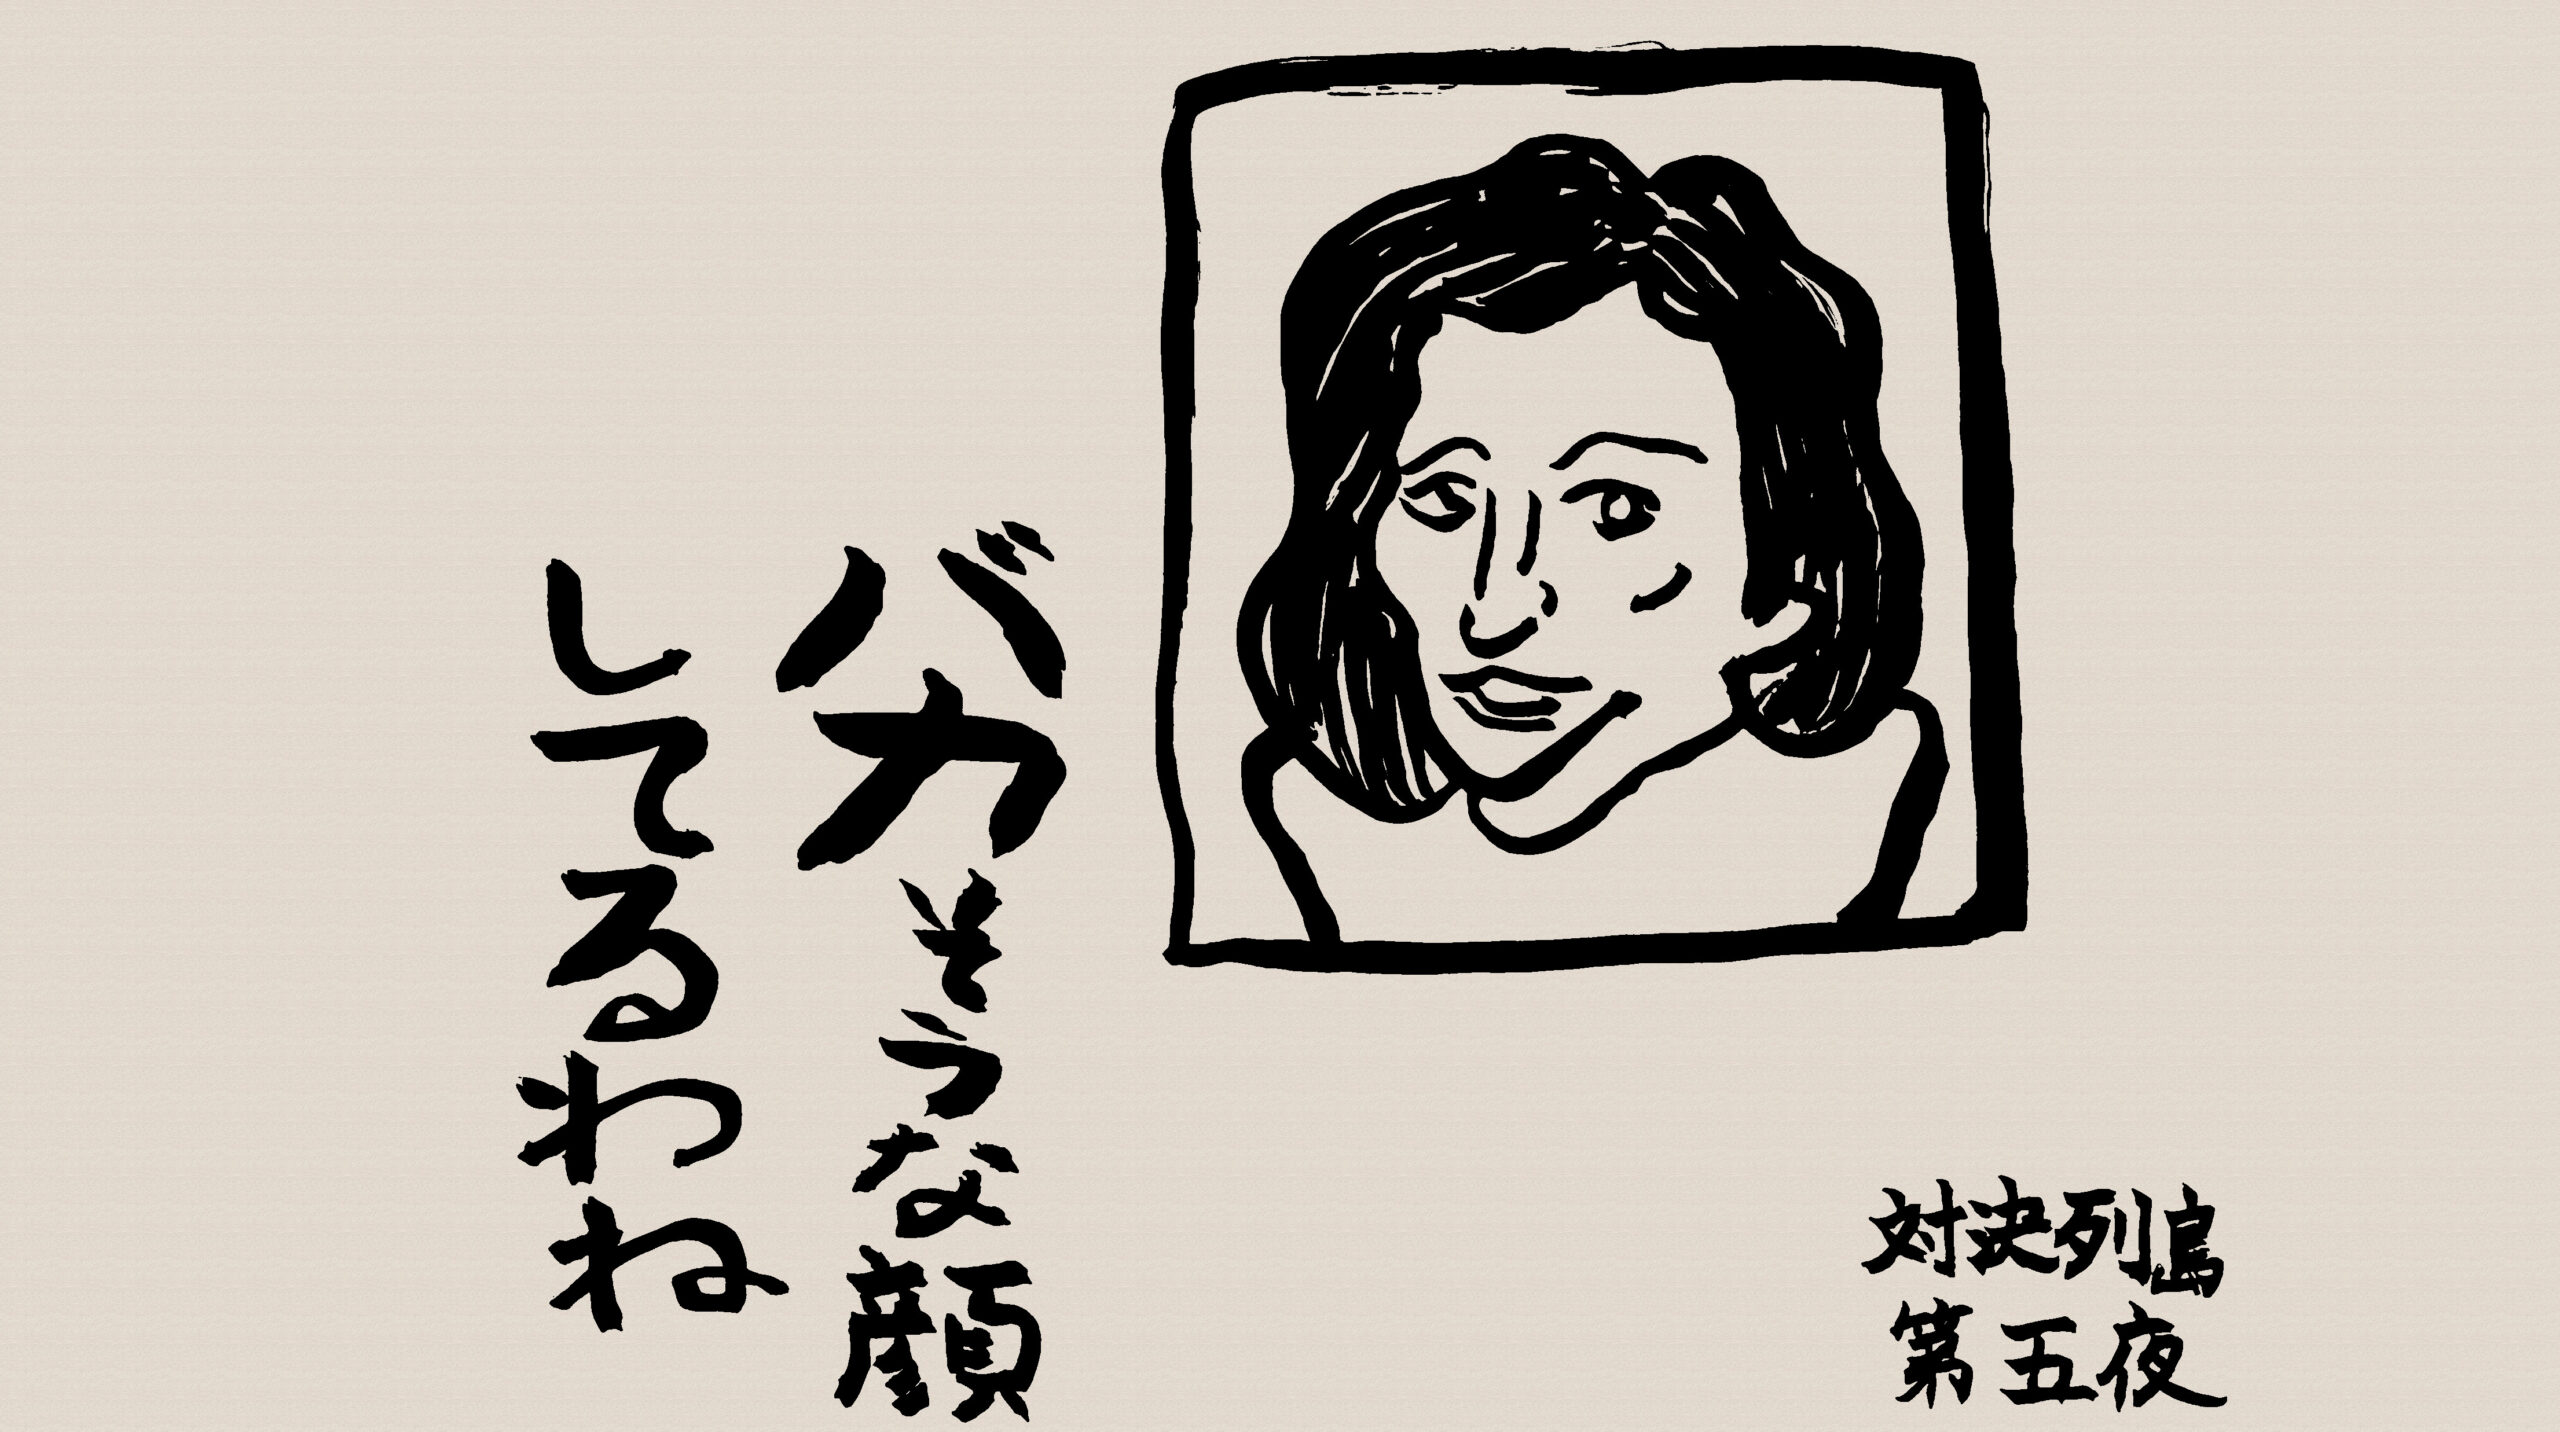 大泉洋が田中真紀子のモノマネで「バカそうな顔してるわね」と言っている絵